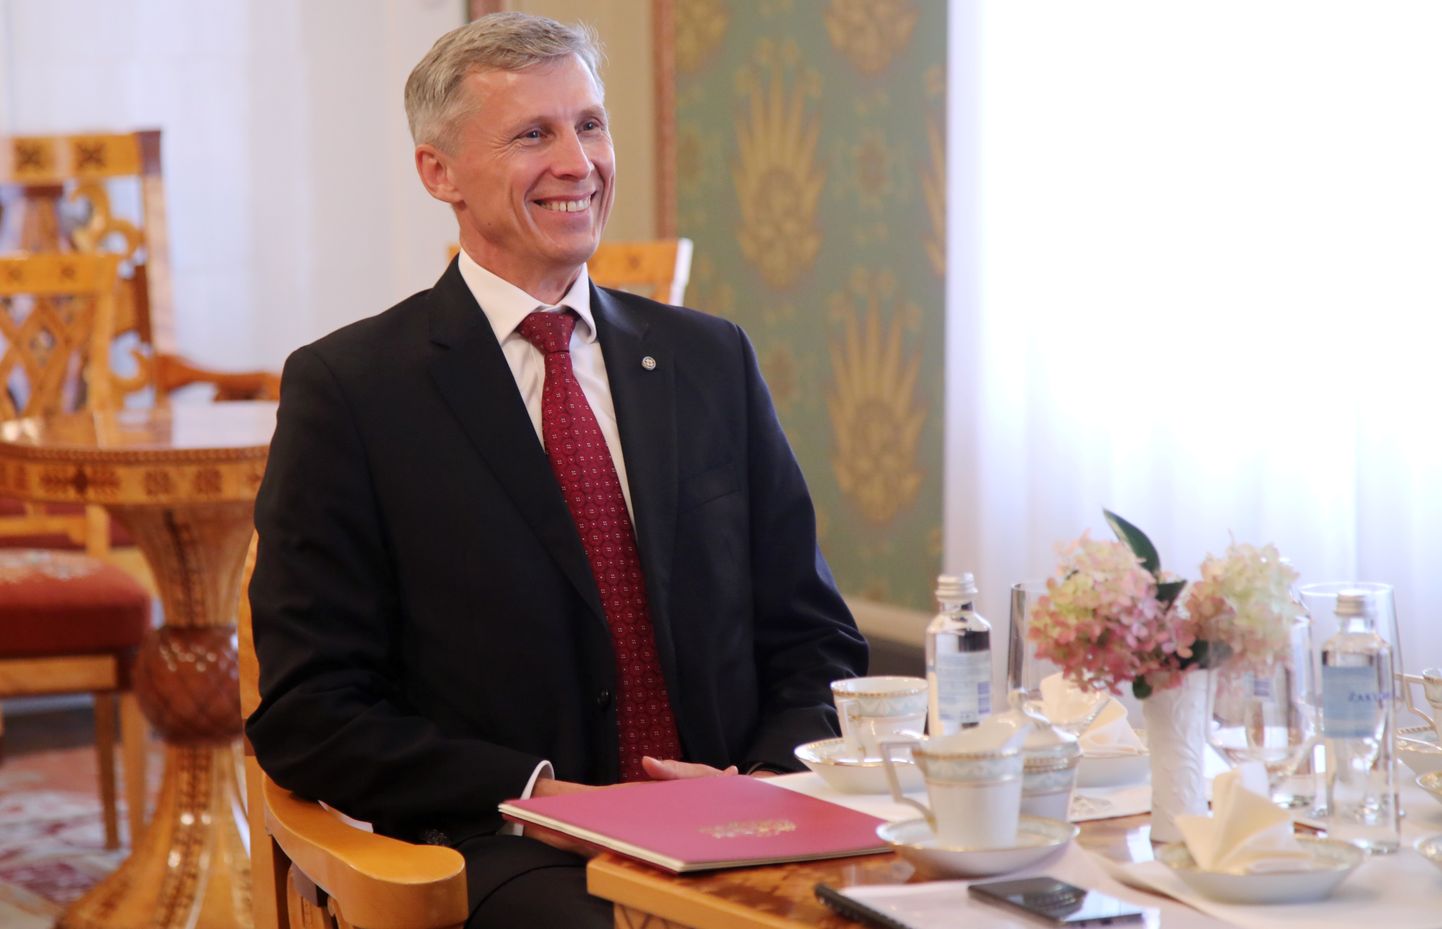 Latvijas vēstnieks Austrālijā Marģers Krams akreditācijas vizītes laikā pie Valsts prezidenta Rīgas pilī.